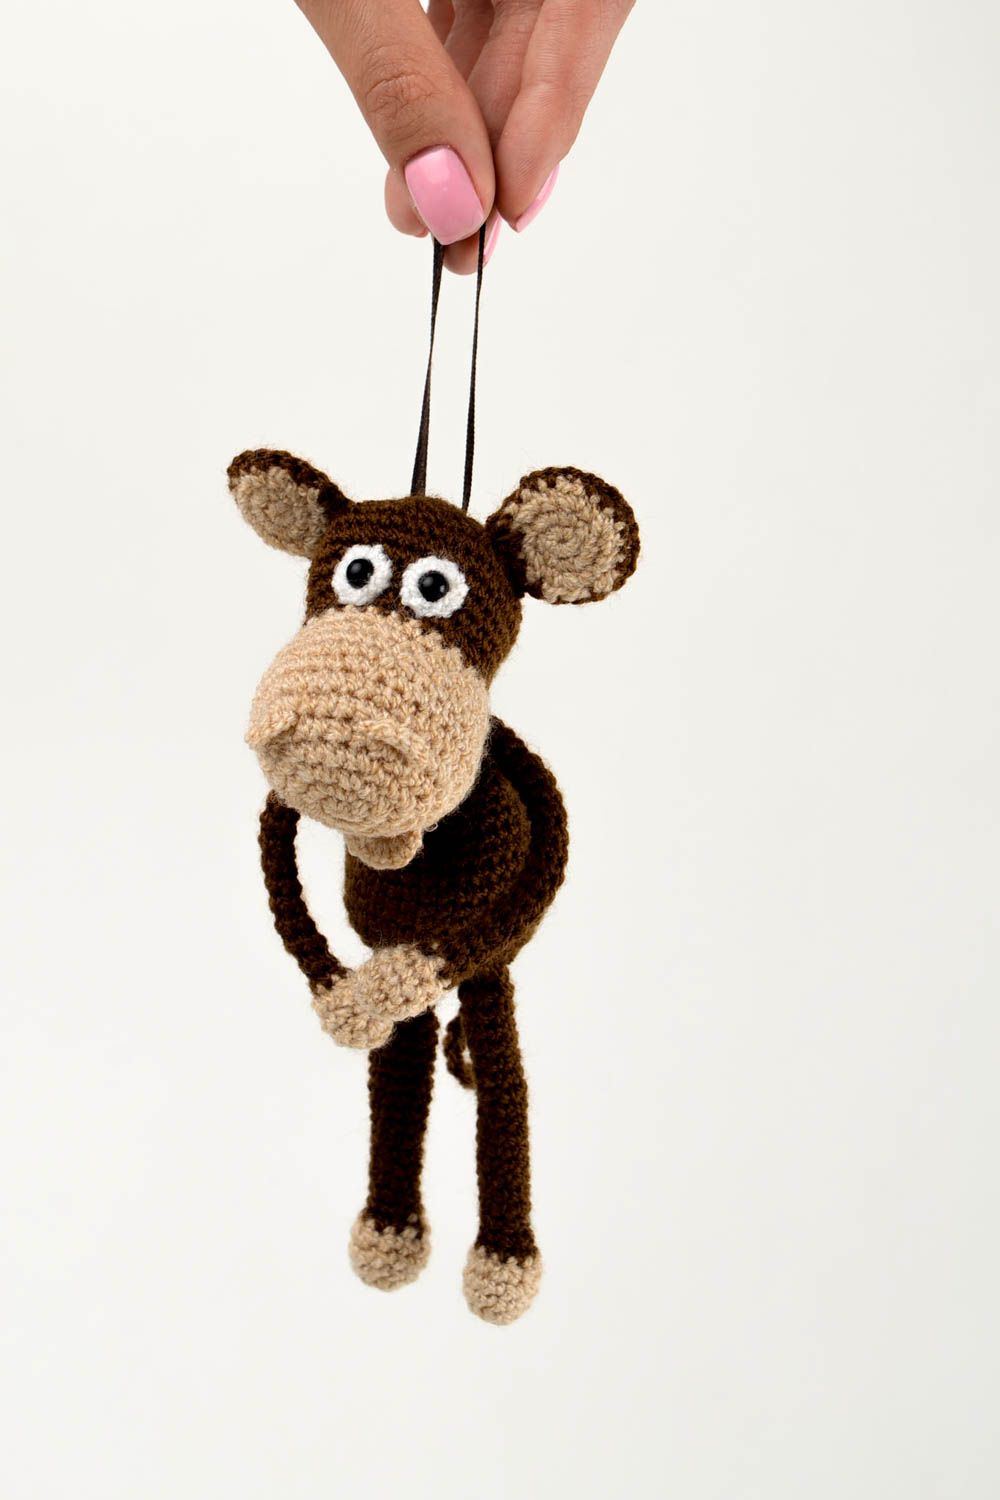 Handmade soft toy nursery decor toy animal monkey toy presents for children photo 2